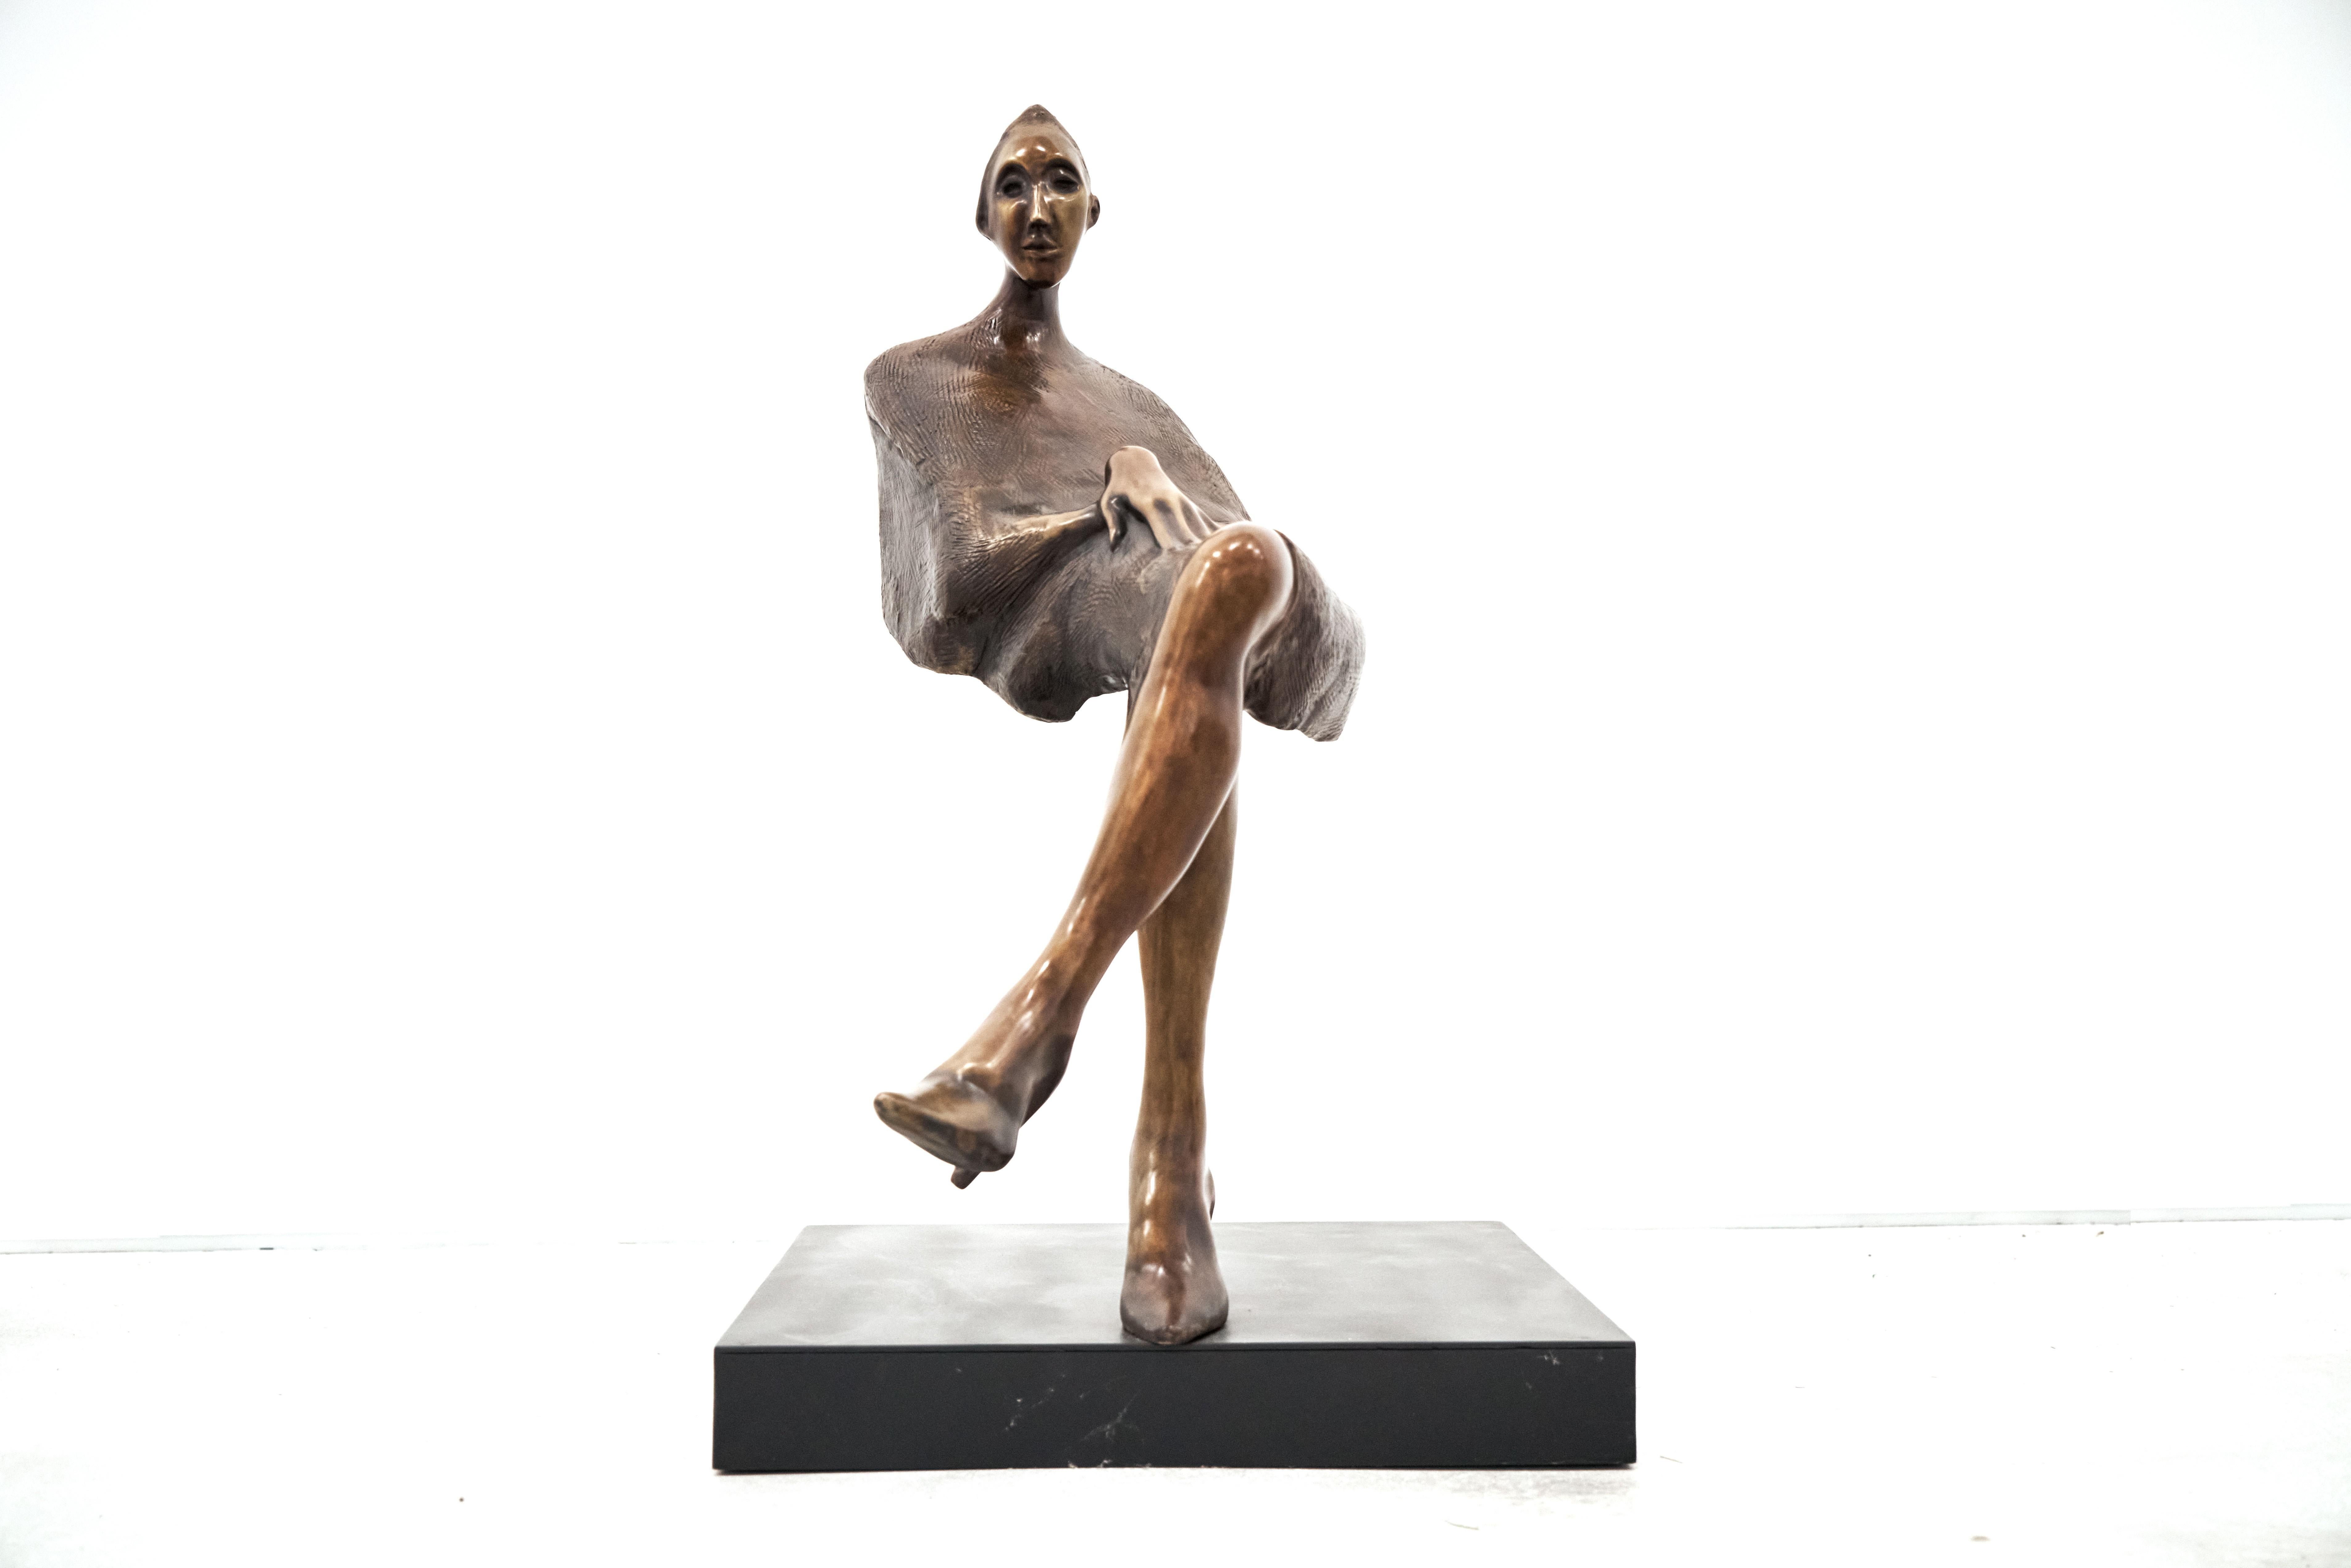 Figurative Sculpture Jorge Seguí  -  Jorge Segu,  Ilusion silla, 2000, bronze, édition de 7 exemplaires, 78 x 90 x 33 cm 